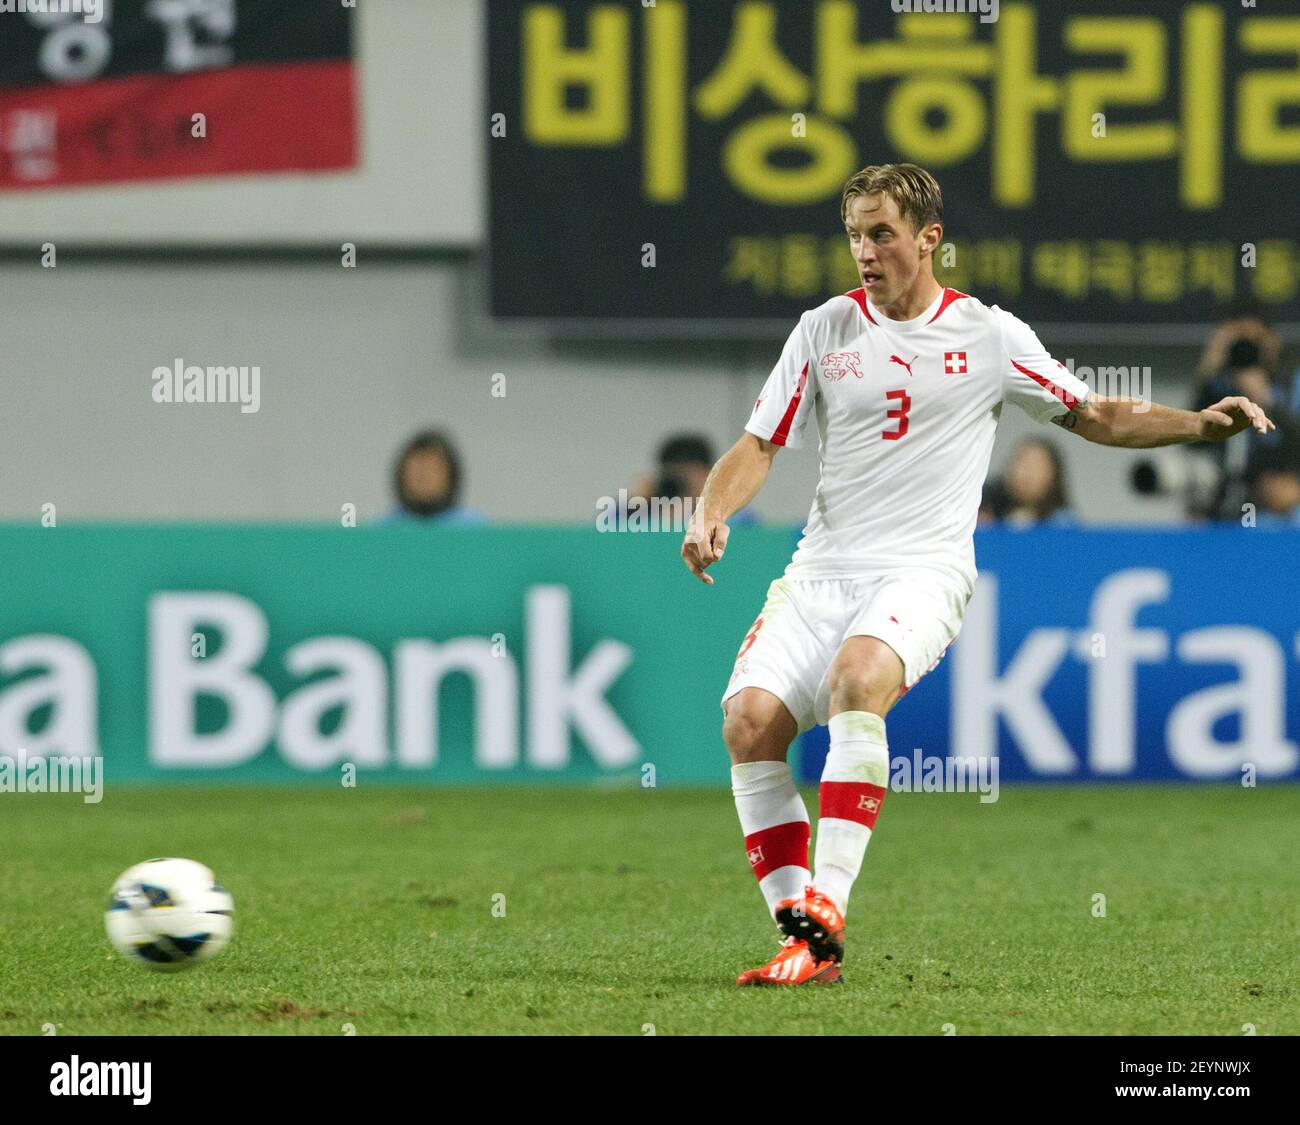 15 de noviembre de 2013 - Seúl, Corea del Sur: El jugador de Suiza Resto  Ziegler se regatea por el balón durante el partido amistoso internacional  contra Corea del Sur y Suiza